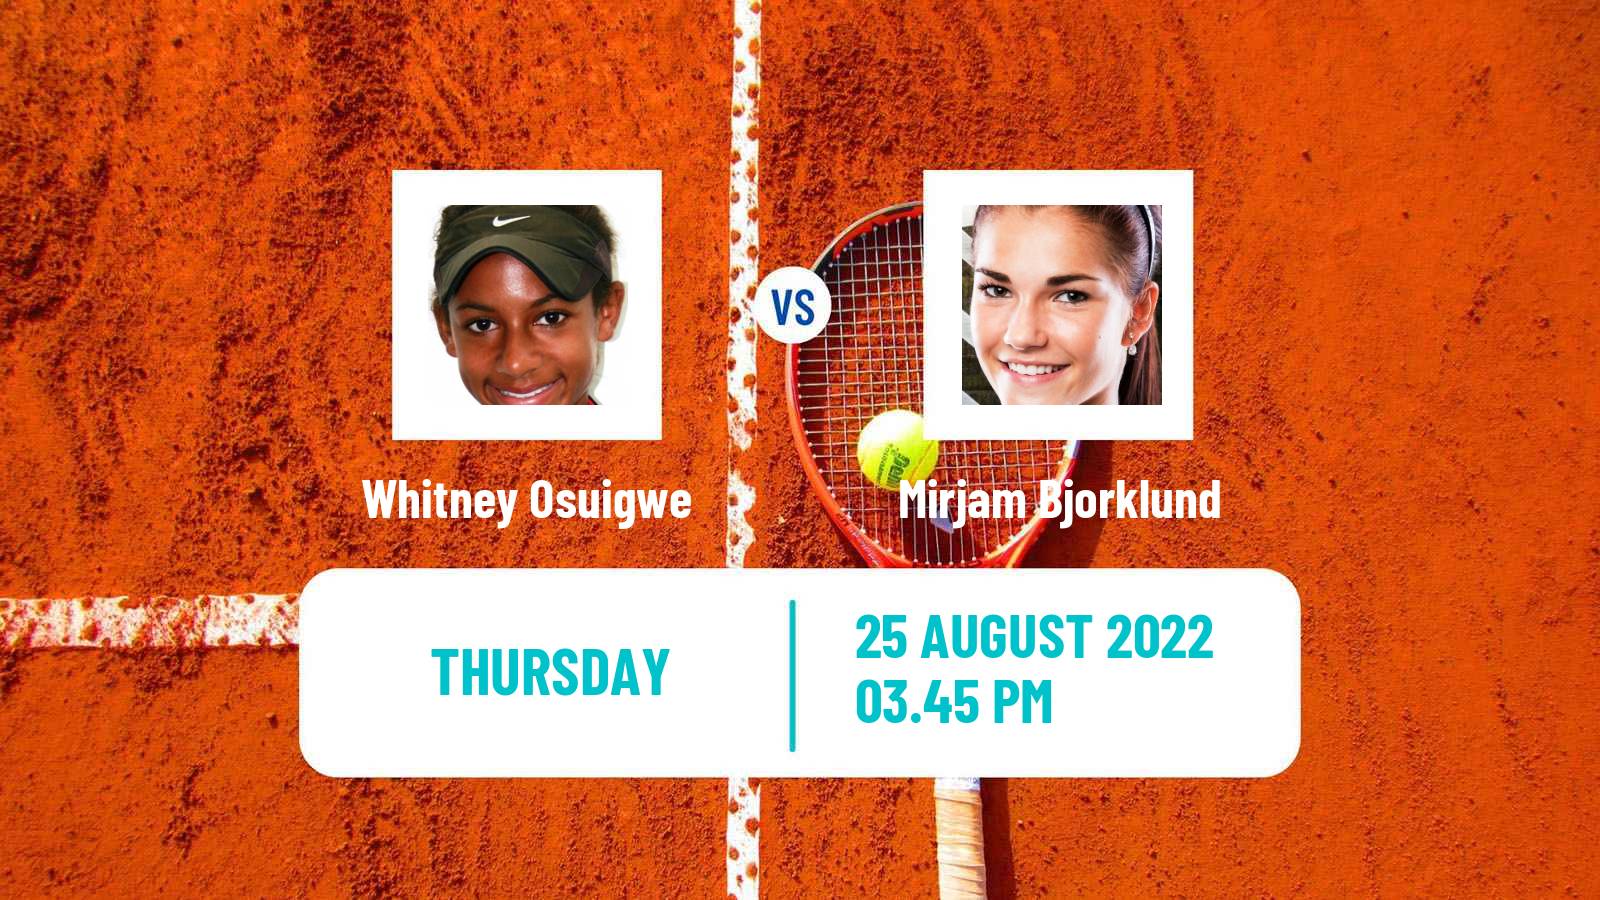 Tennis WTA US Open Whitney Osuigwe - Mirjam Bjorklund